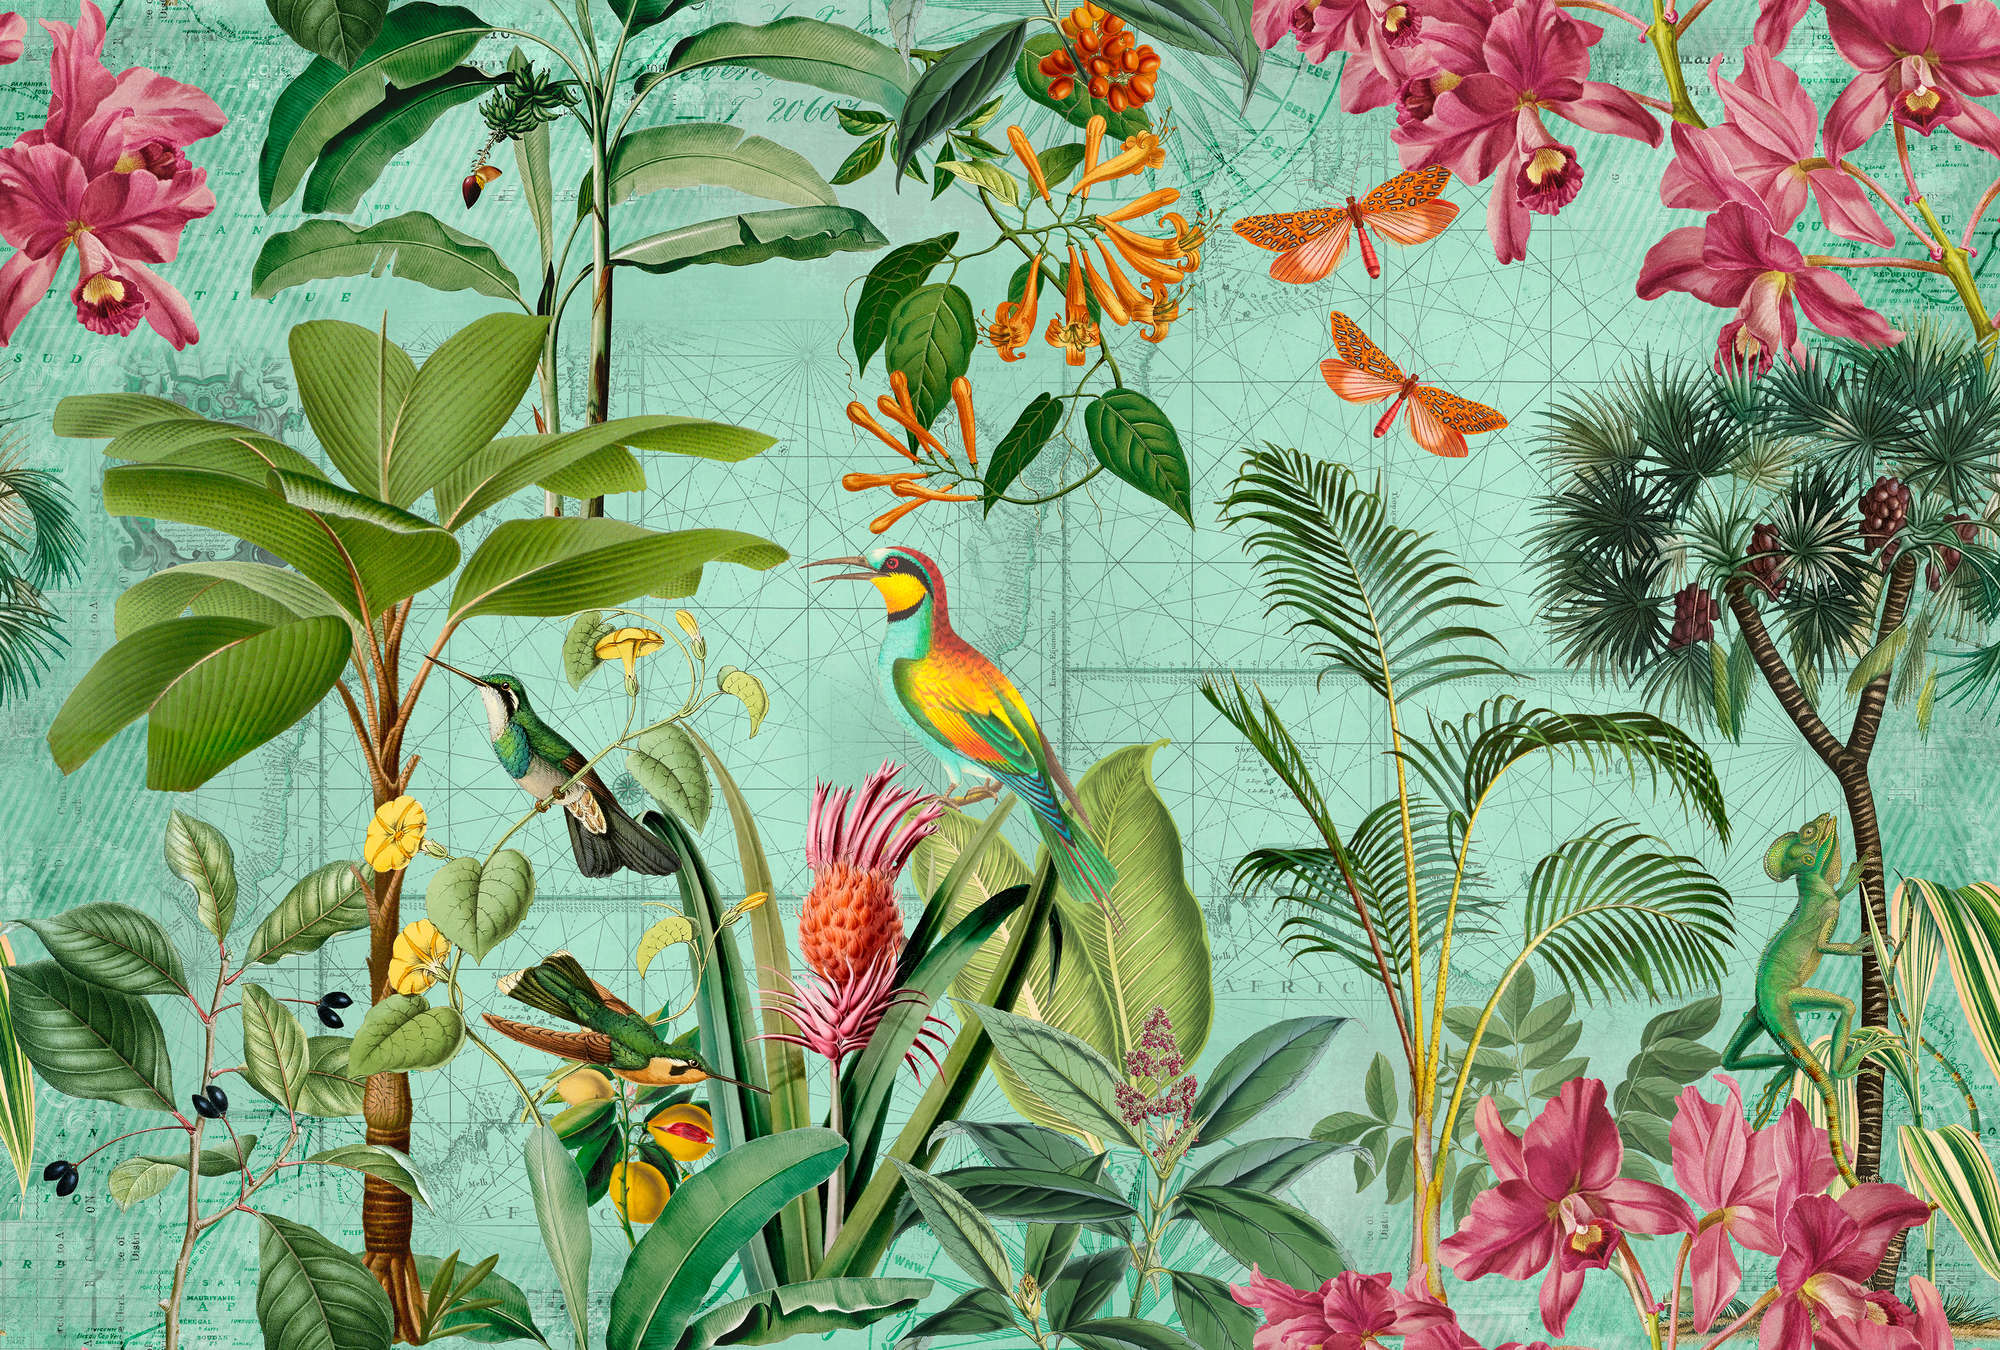             Papier peint panoramique jungle coloré avec arbres, fleurs & animaux
        